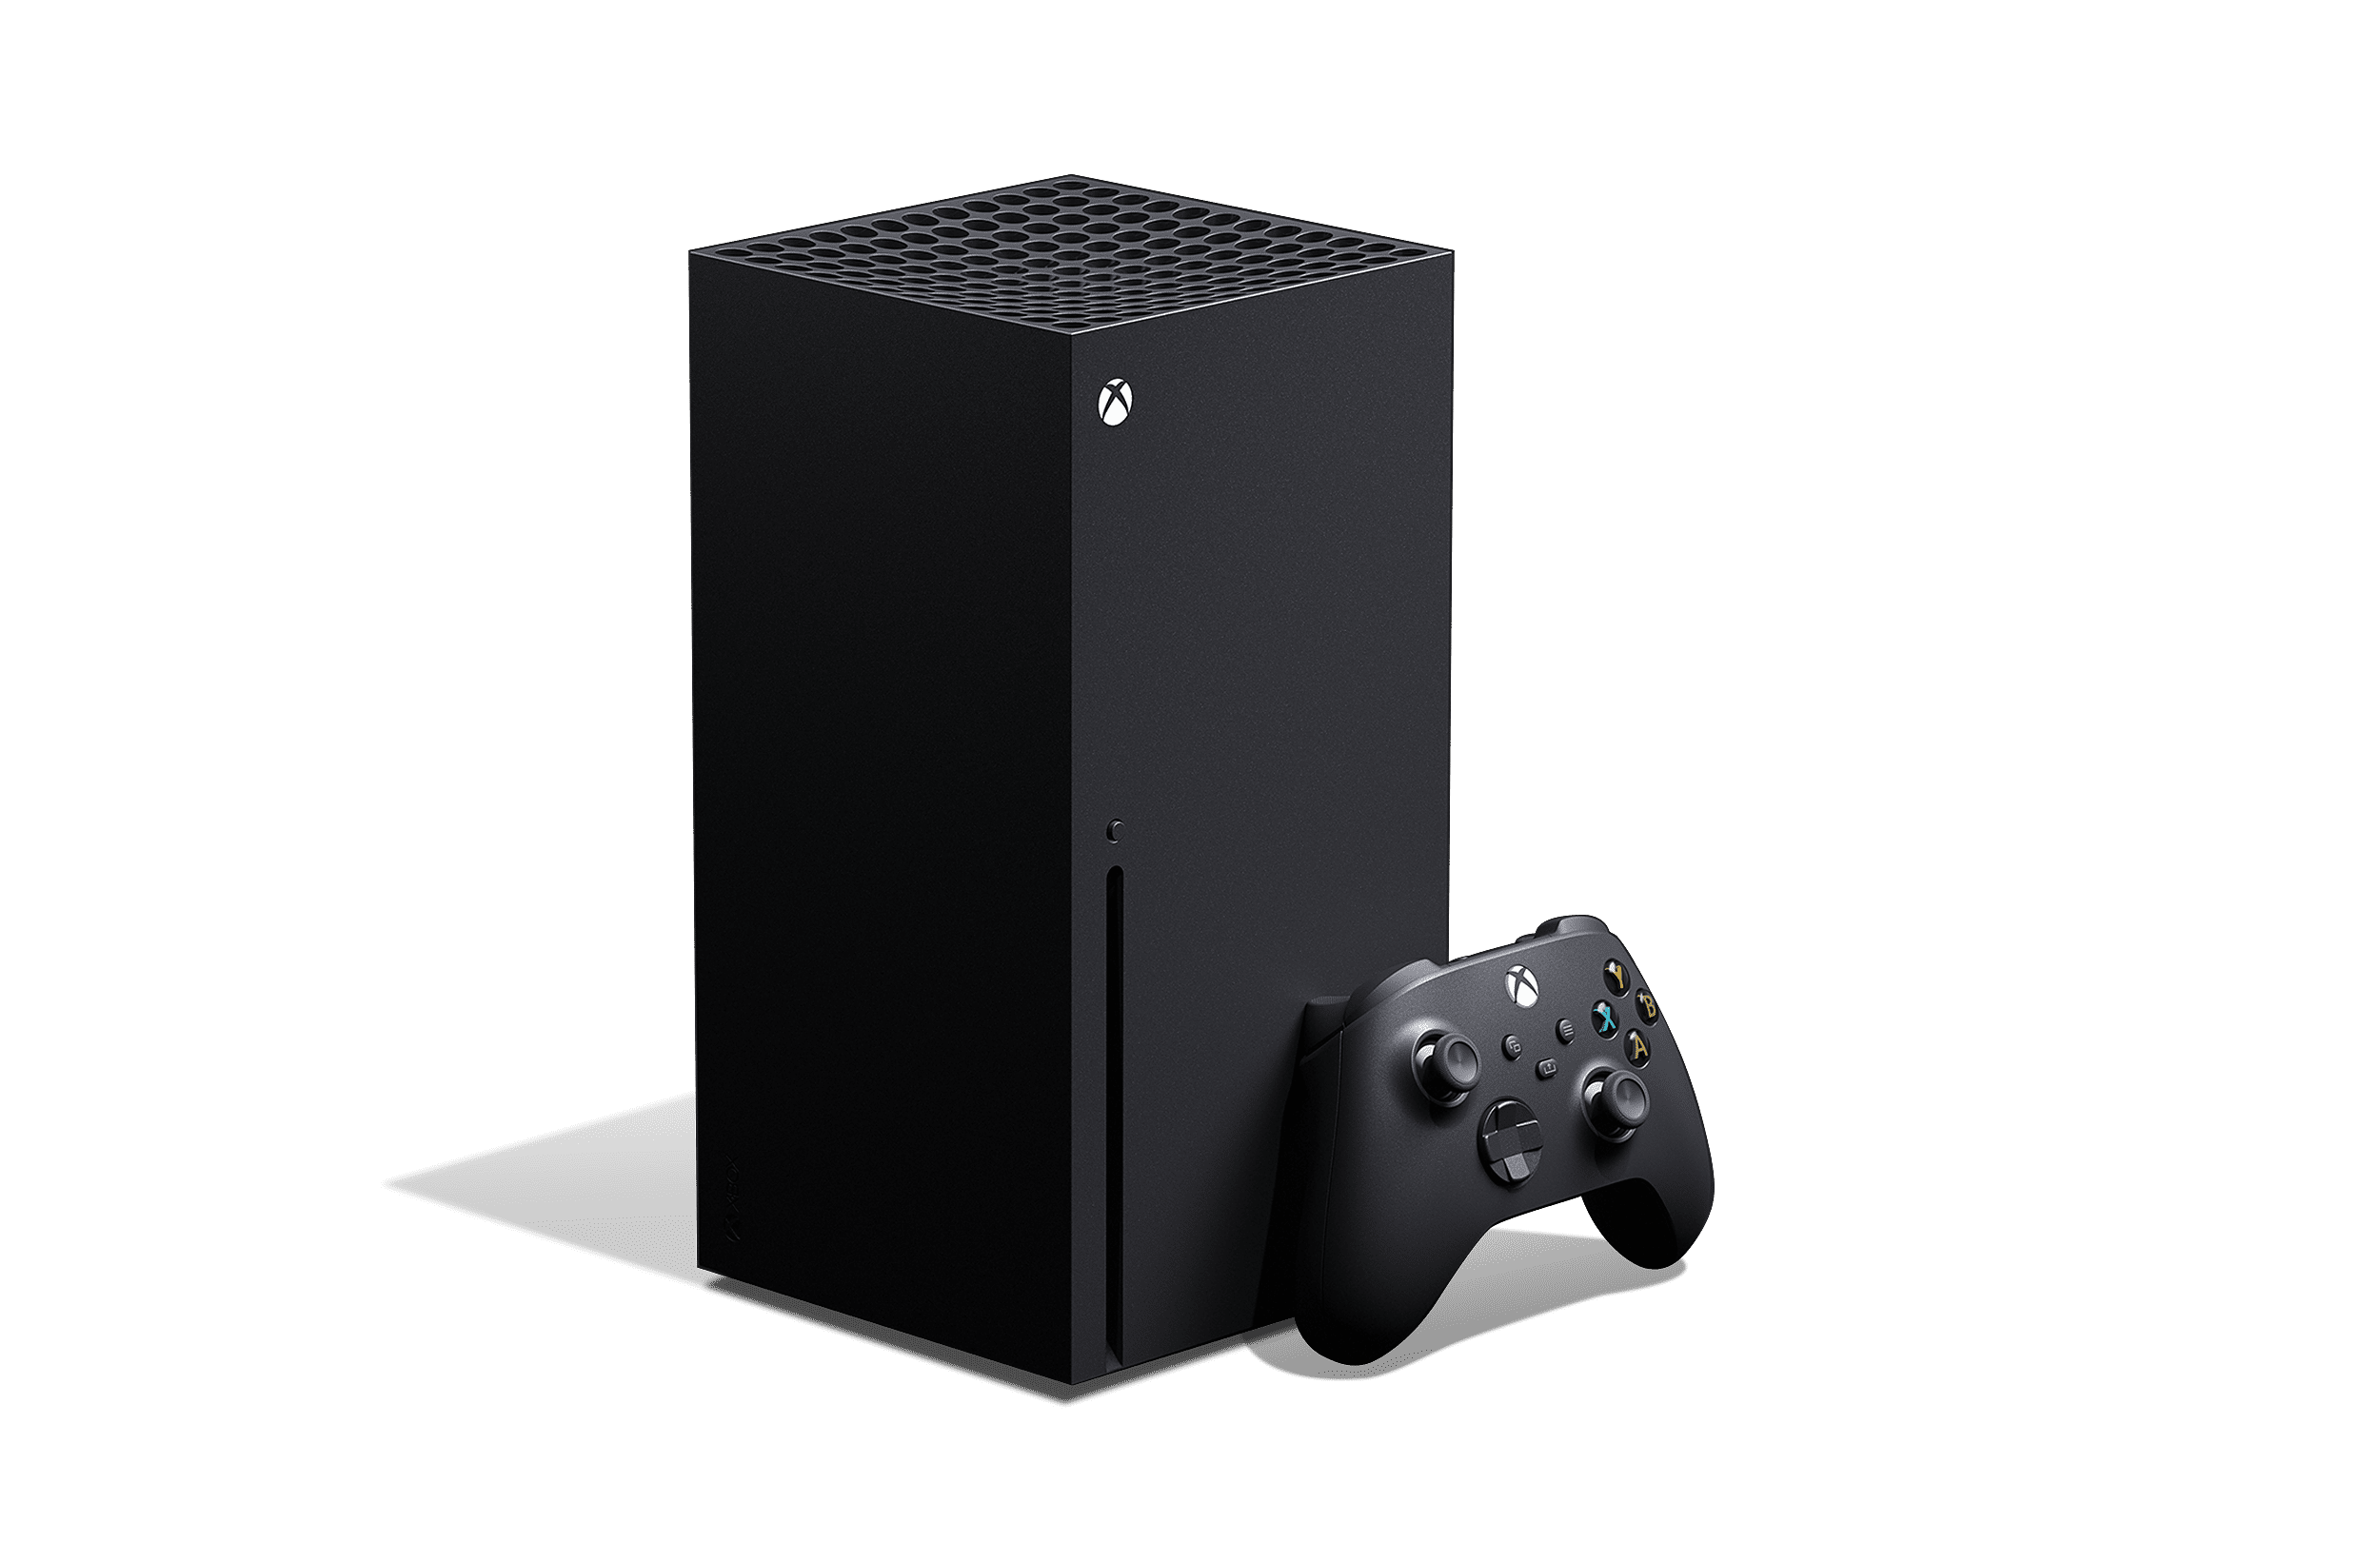 Xbox Series X Console 1 TB